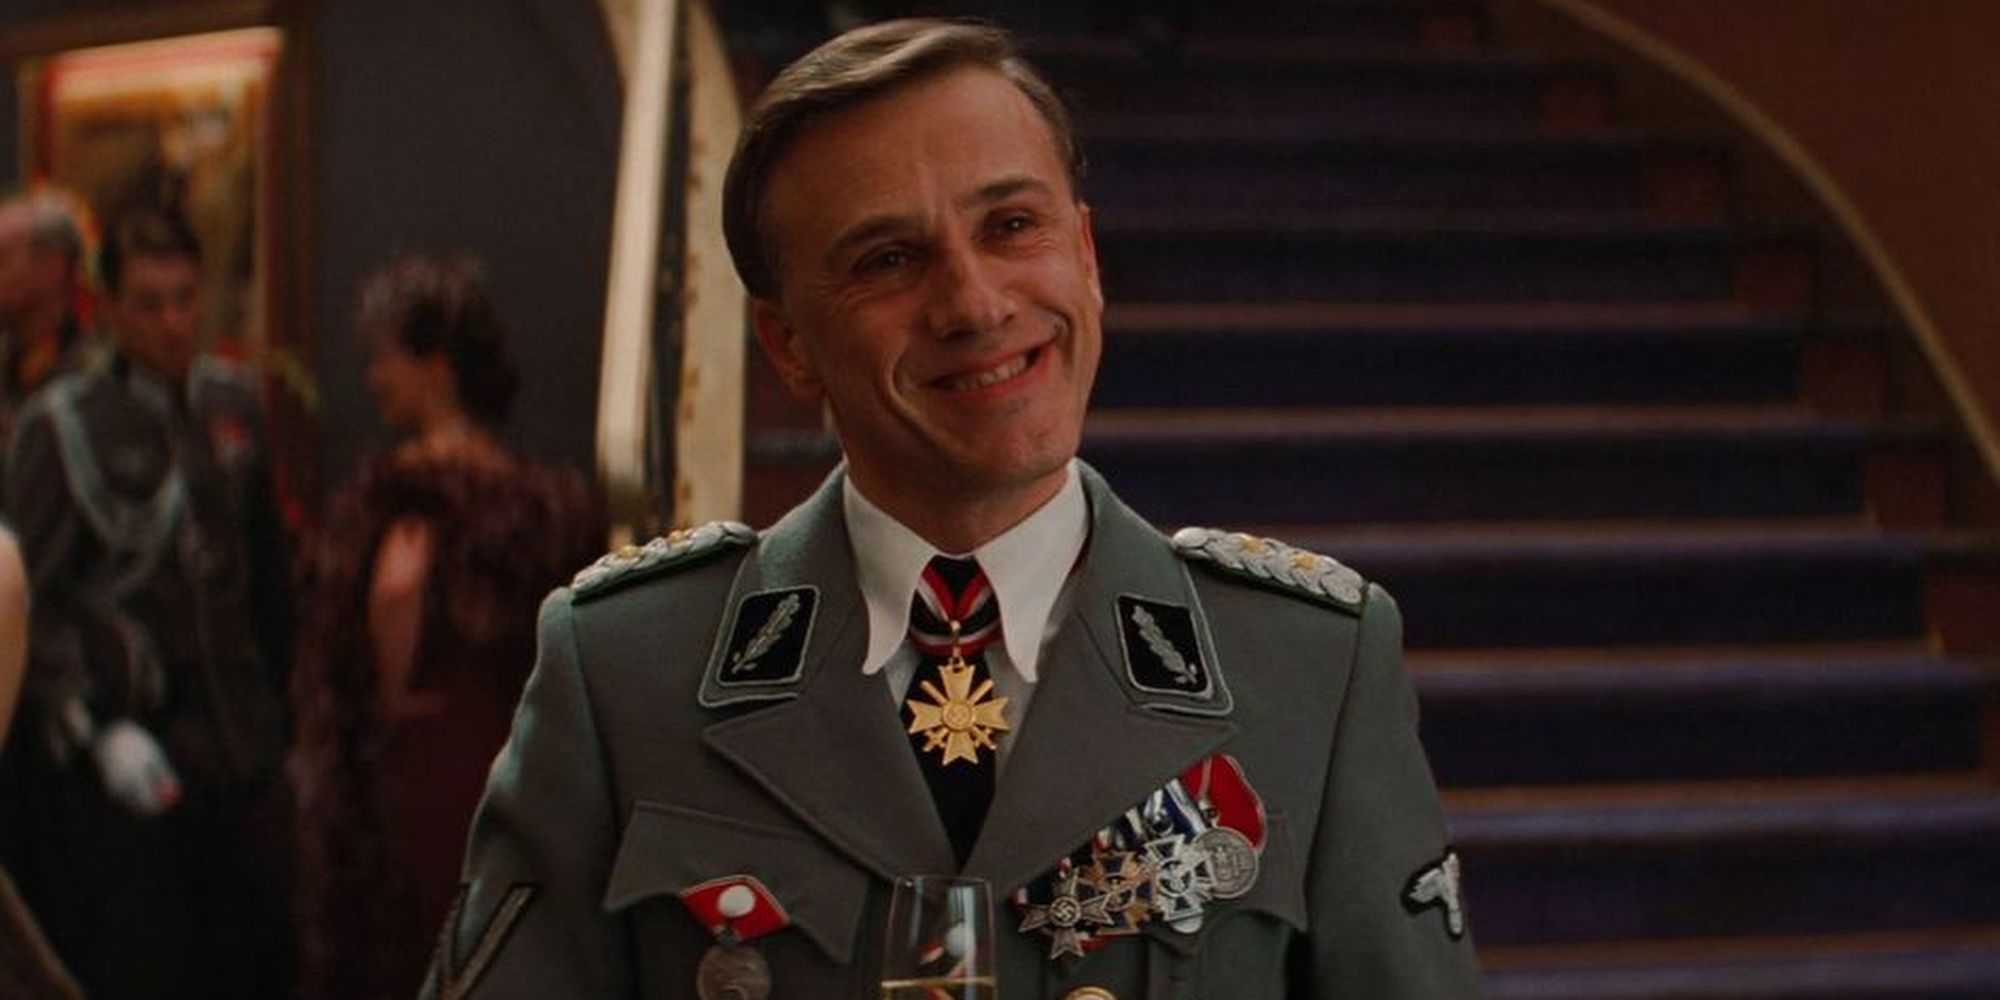 Hans Landa smiling in 'Inglorious Basterds'